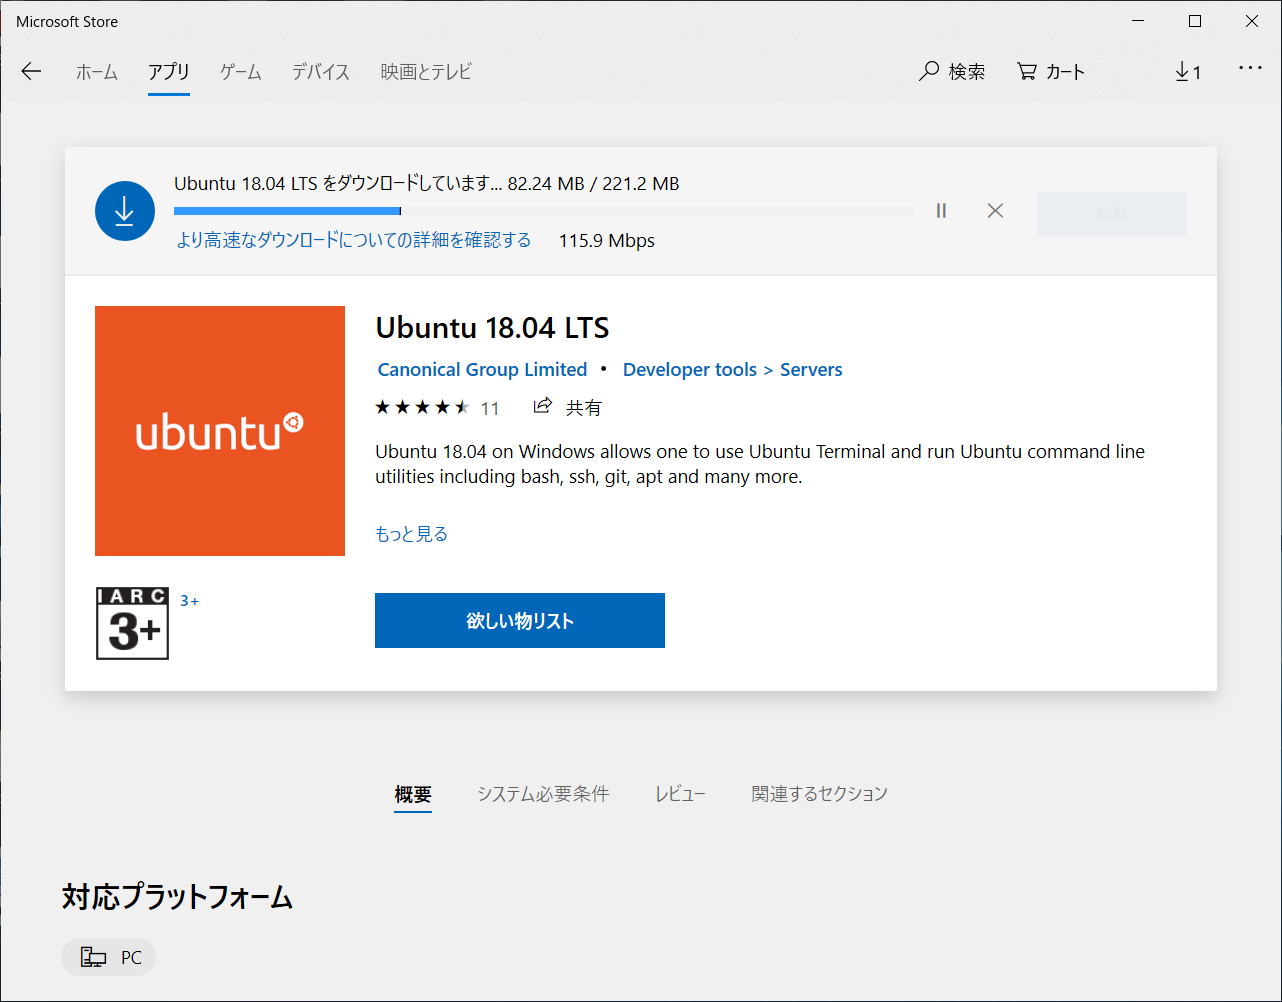 ubuntu_store.png